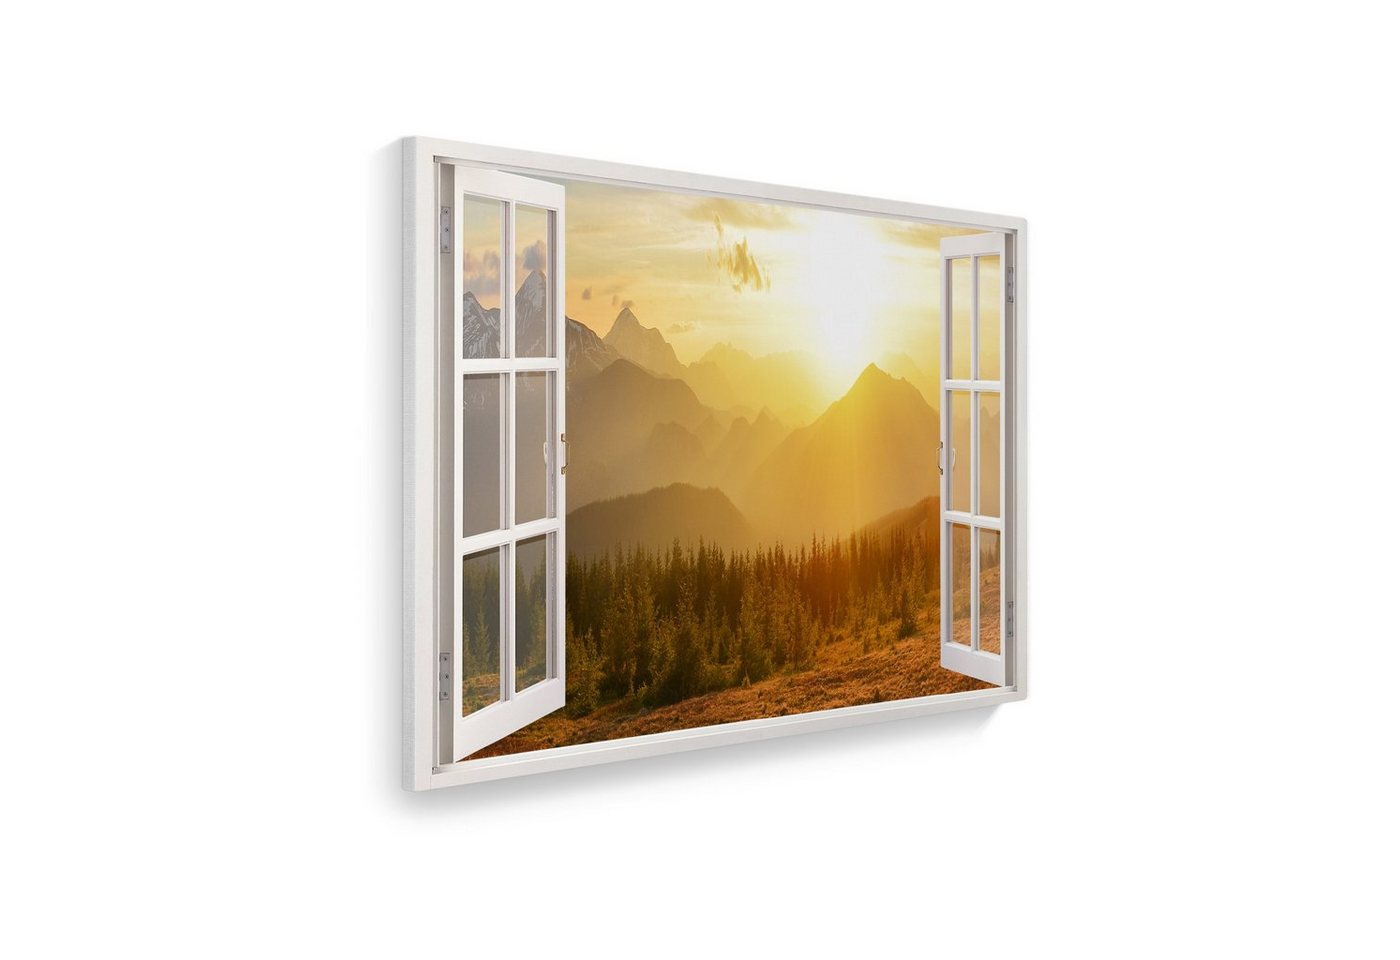 WallSpirit Leinwandbild Fenster mit Aussicht", Berge Sonnenaufgang, Leinwandbild geeignet für alle Wohnbereiche" von WallSpirit